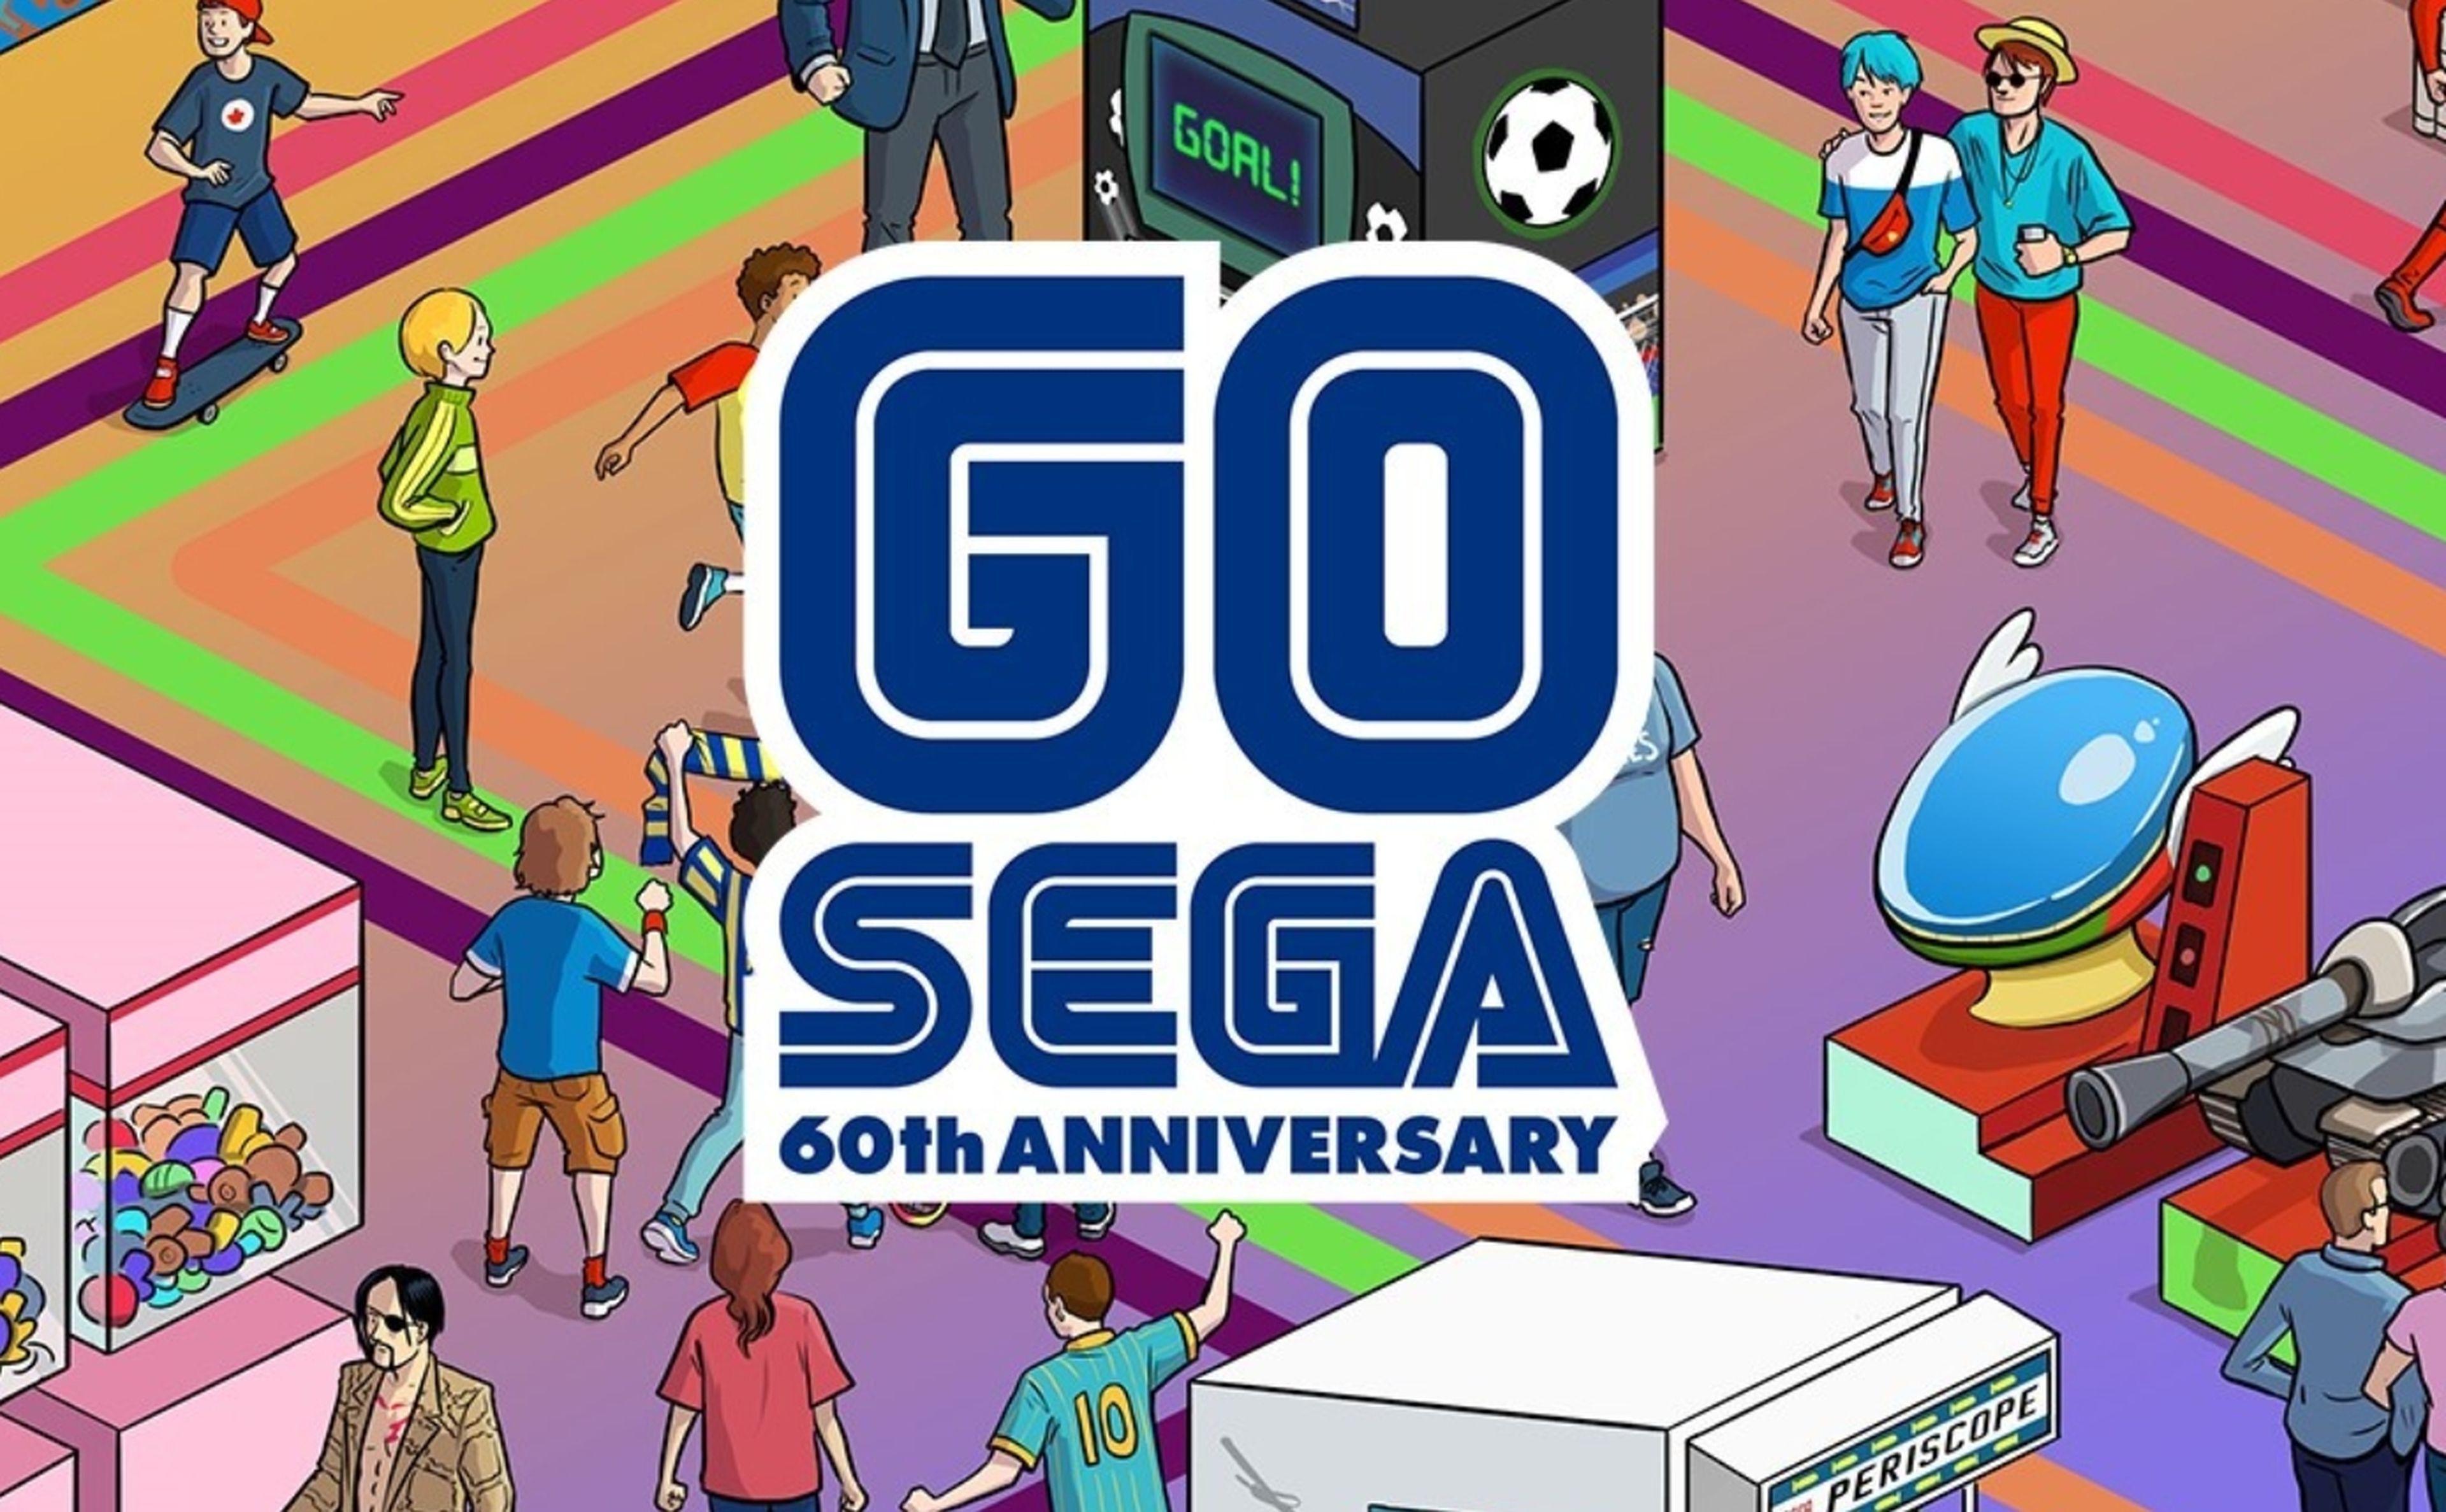 Descarga Sonic the Hedgehog 2 gratis para celebrar el 60 aniversario de Sega